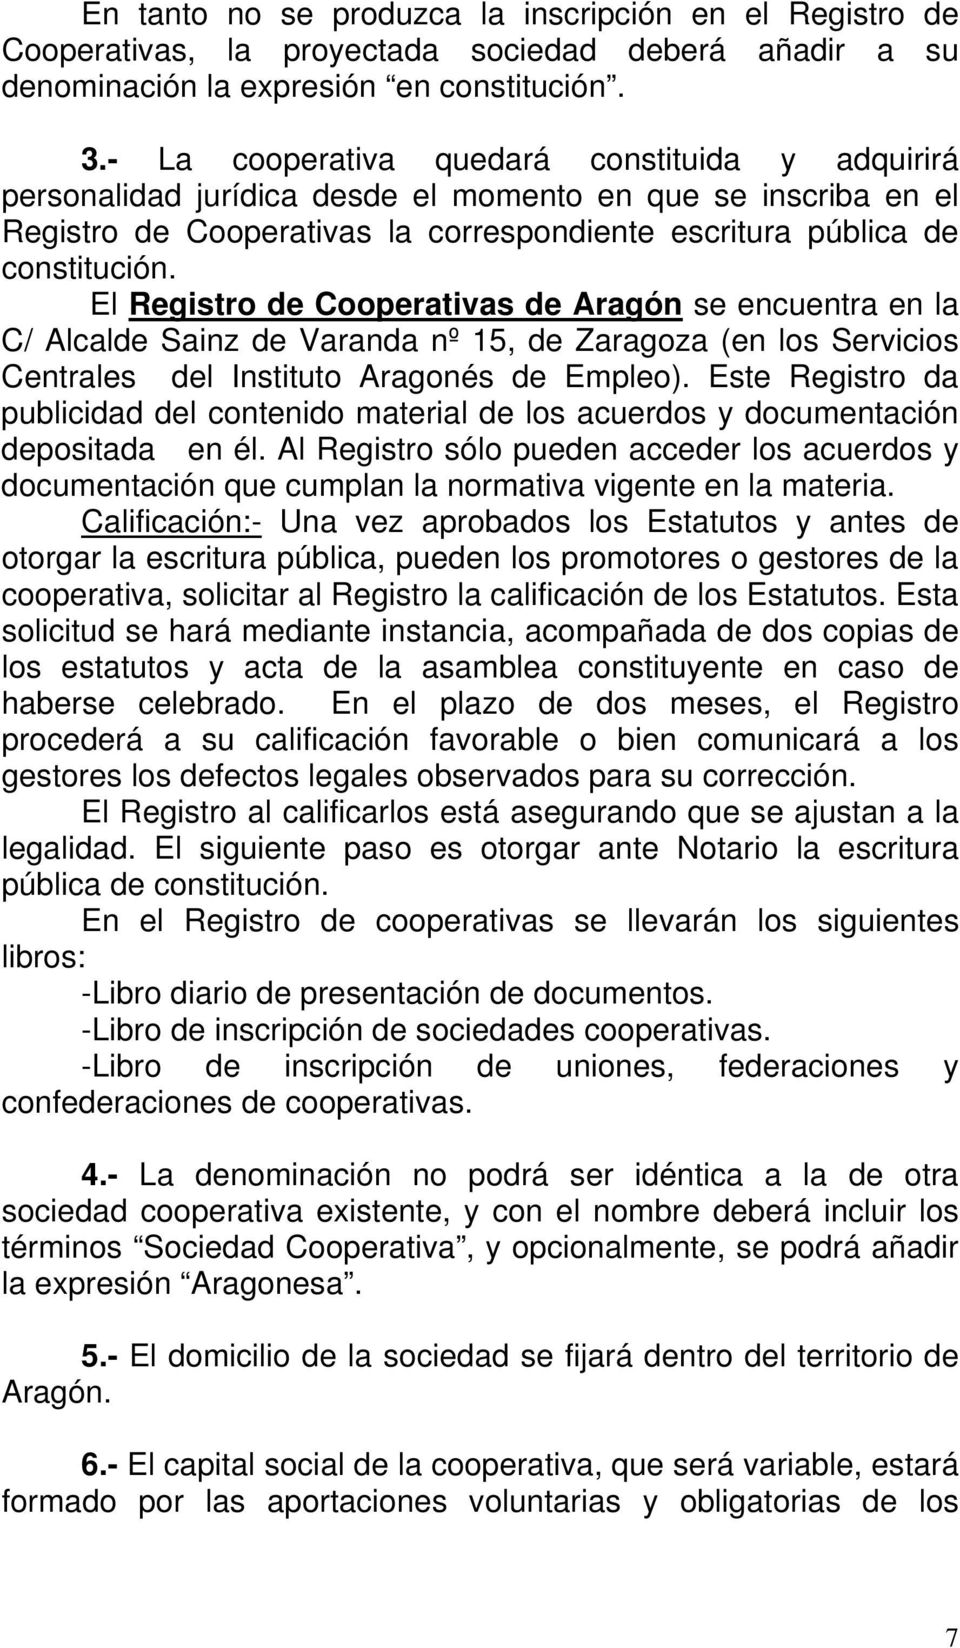 El Registro de Cooperativas de Aragón se encuentra en la C/ Alcalde Sainz de Varanda nº 15, de Zaragoza (en los Servicios Centrales del Instituto Aragonés de Empleo).